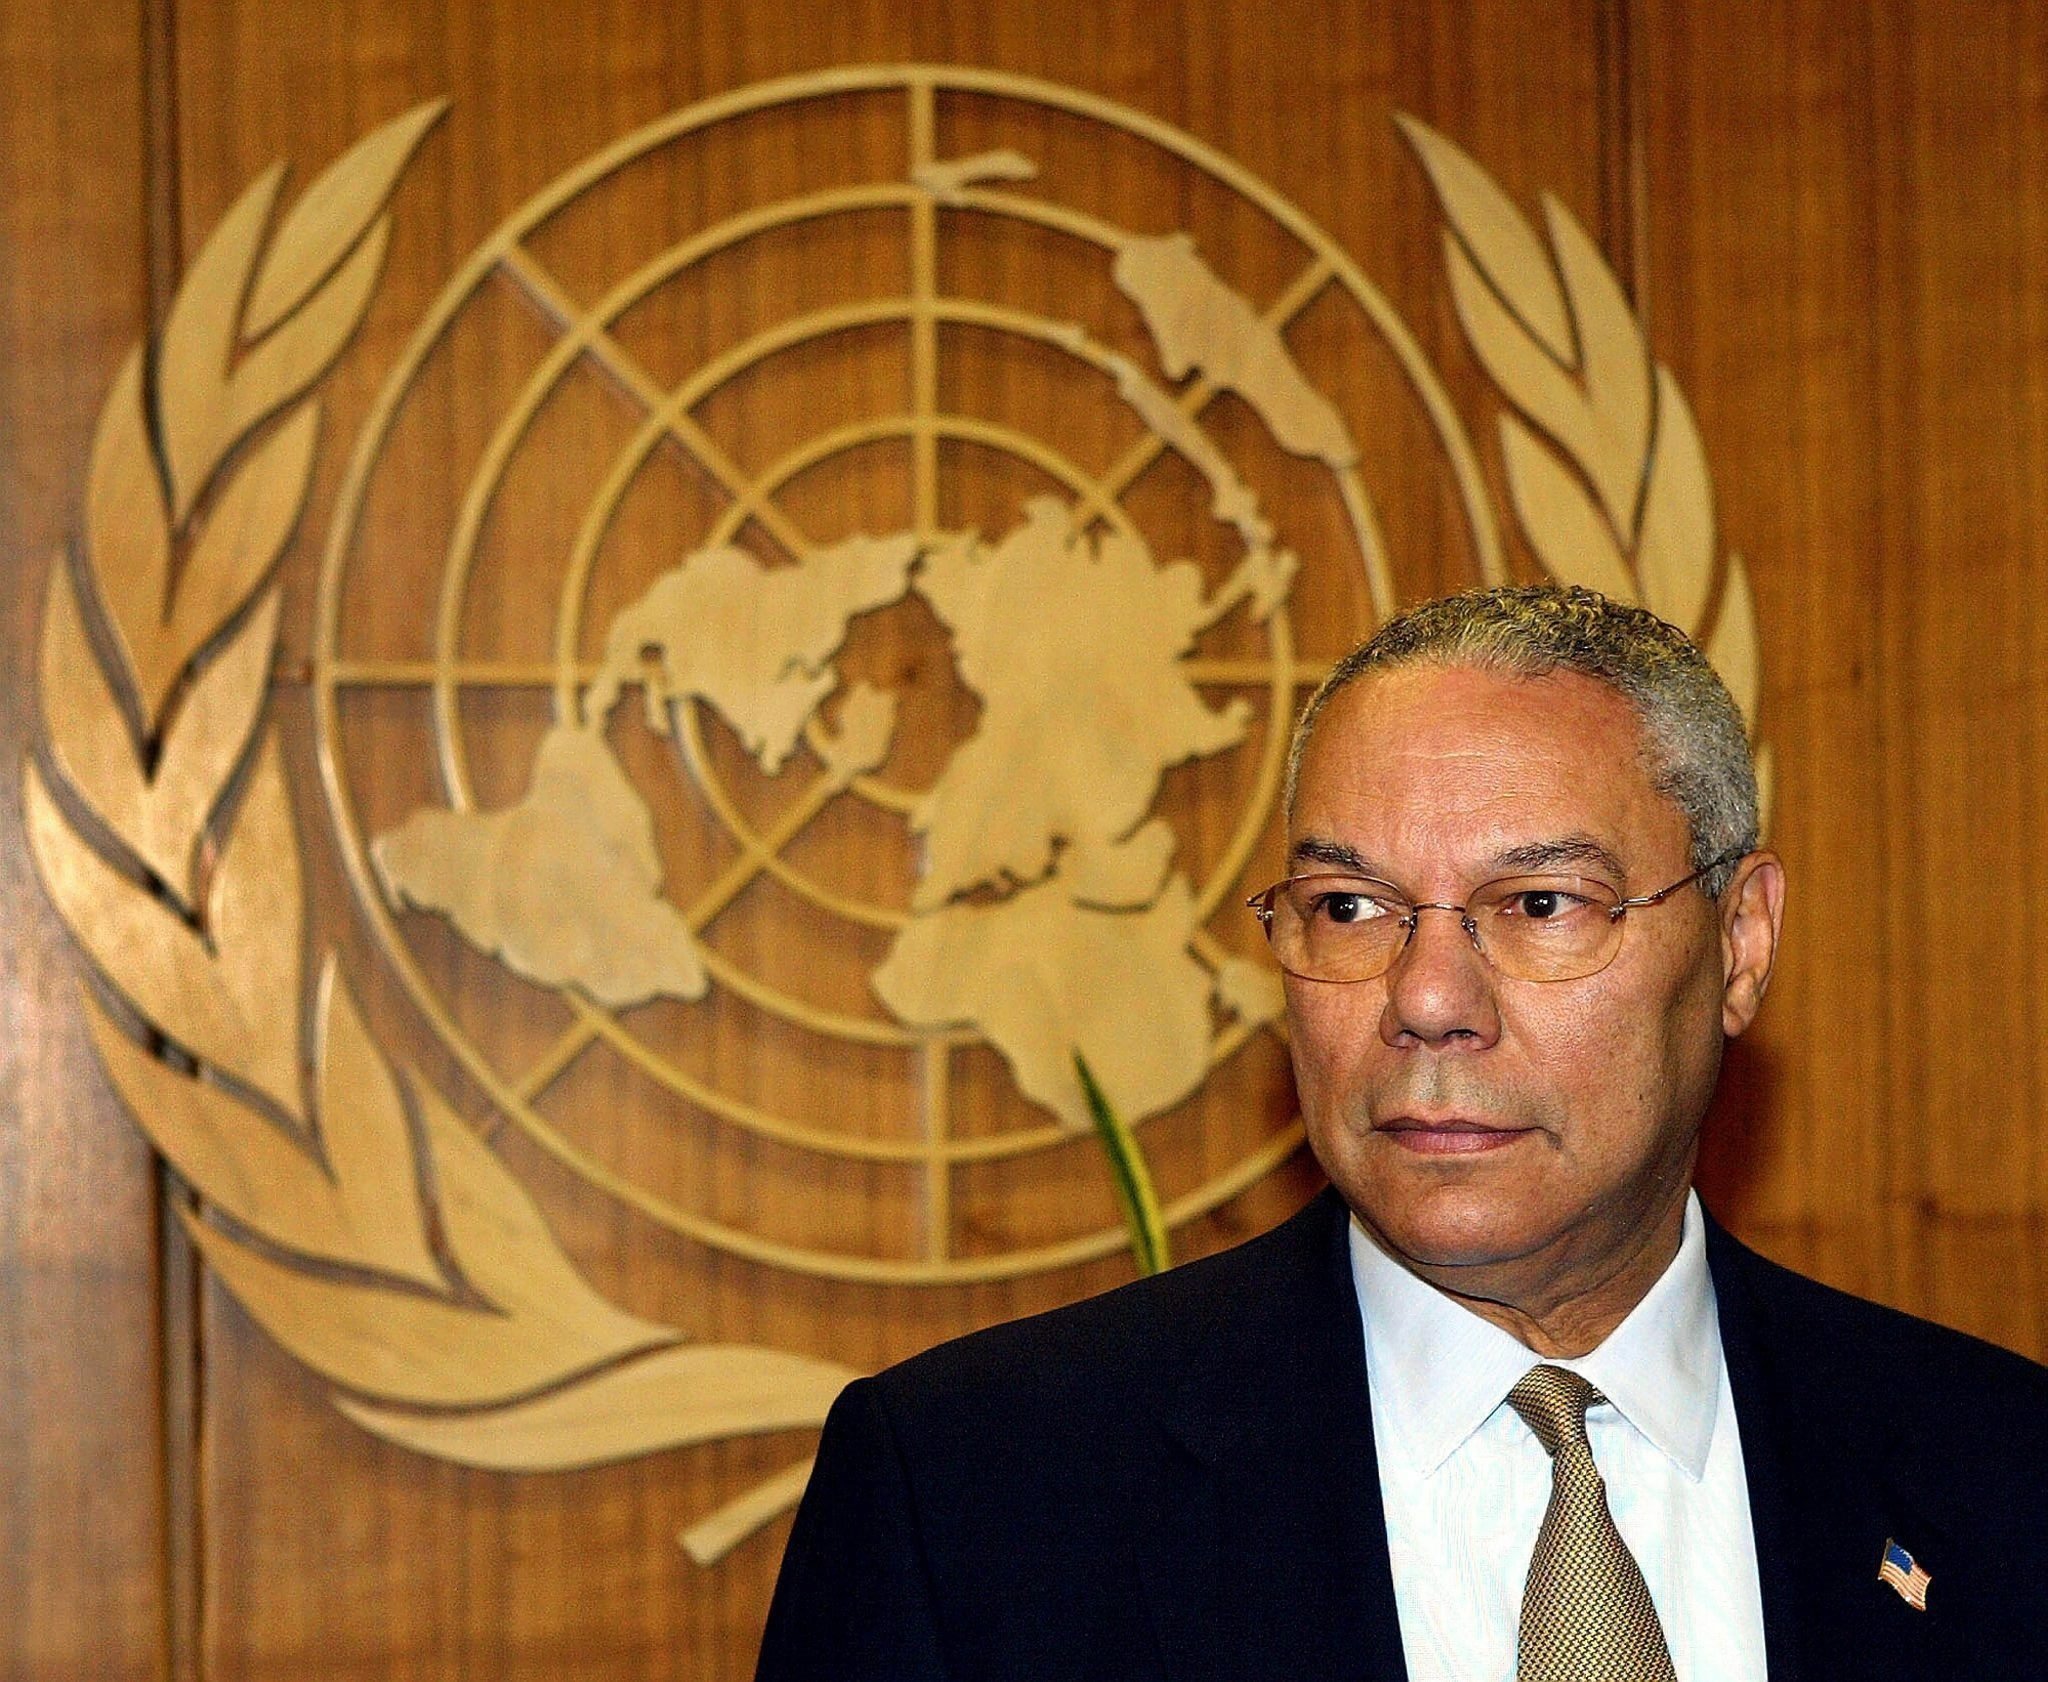 Muere de covid Colin Powell, exsecretario de Estado de los EE. UU., a los 84 años